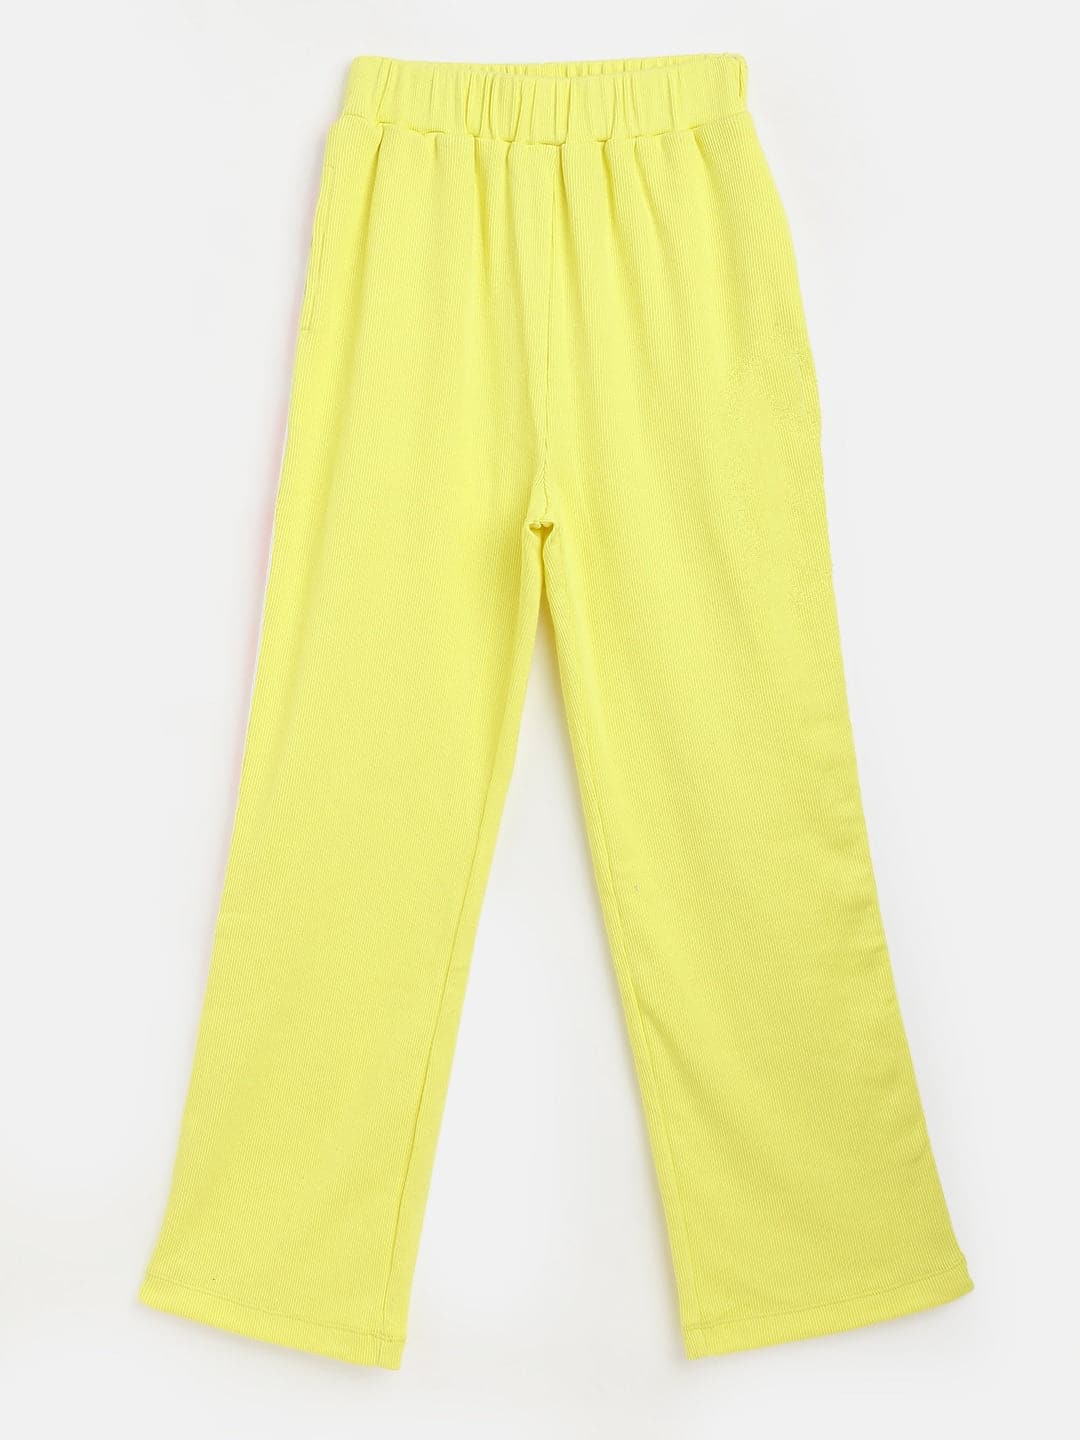 Girl's Yellow Rib Brand Tape Track Pants - LYUSH KIDS